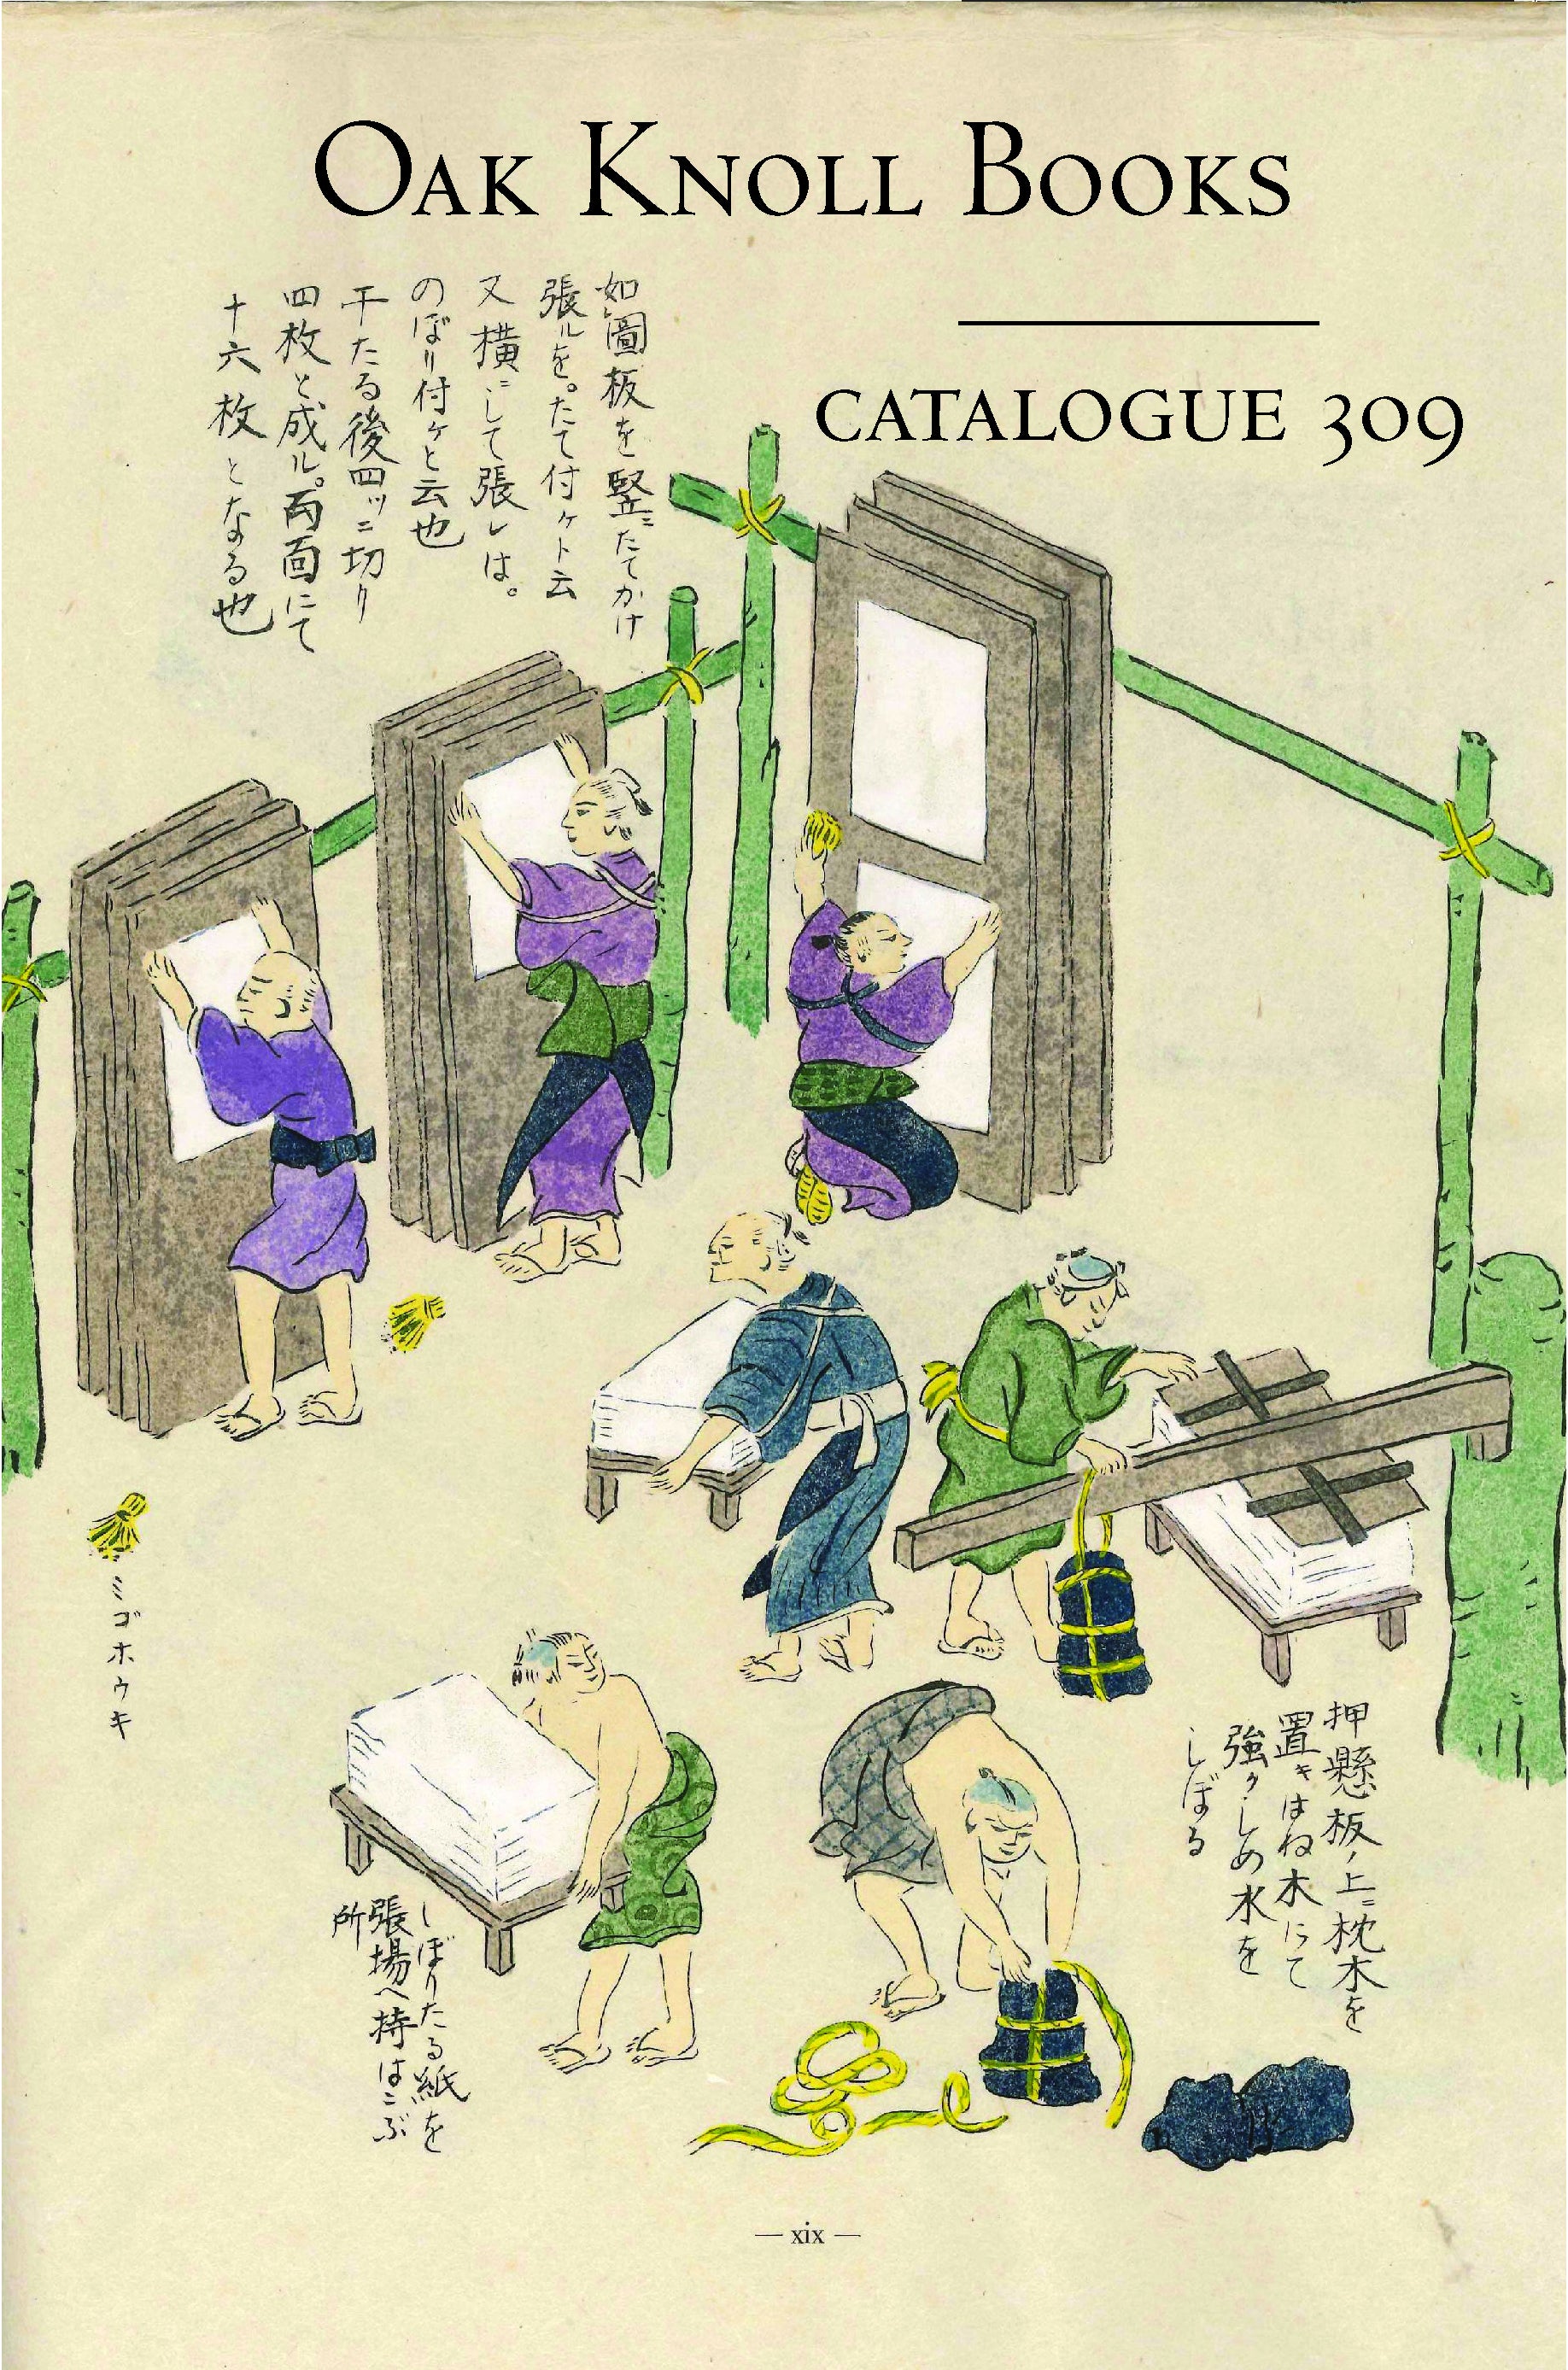 Catalogue 309